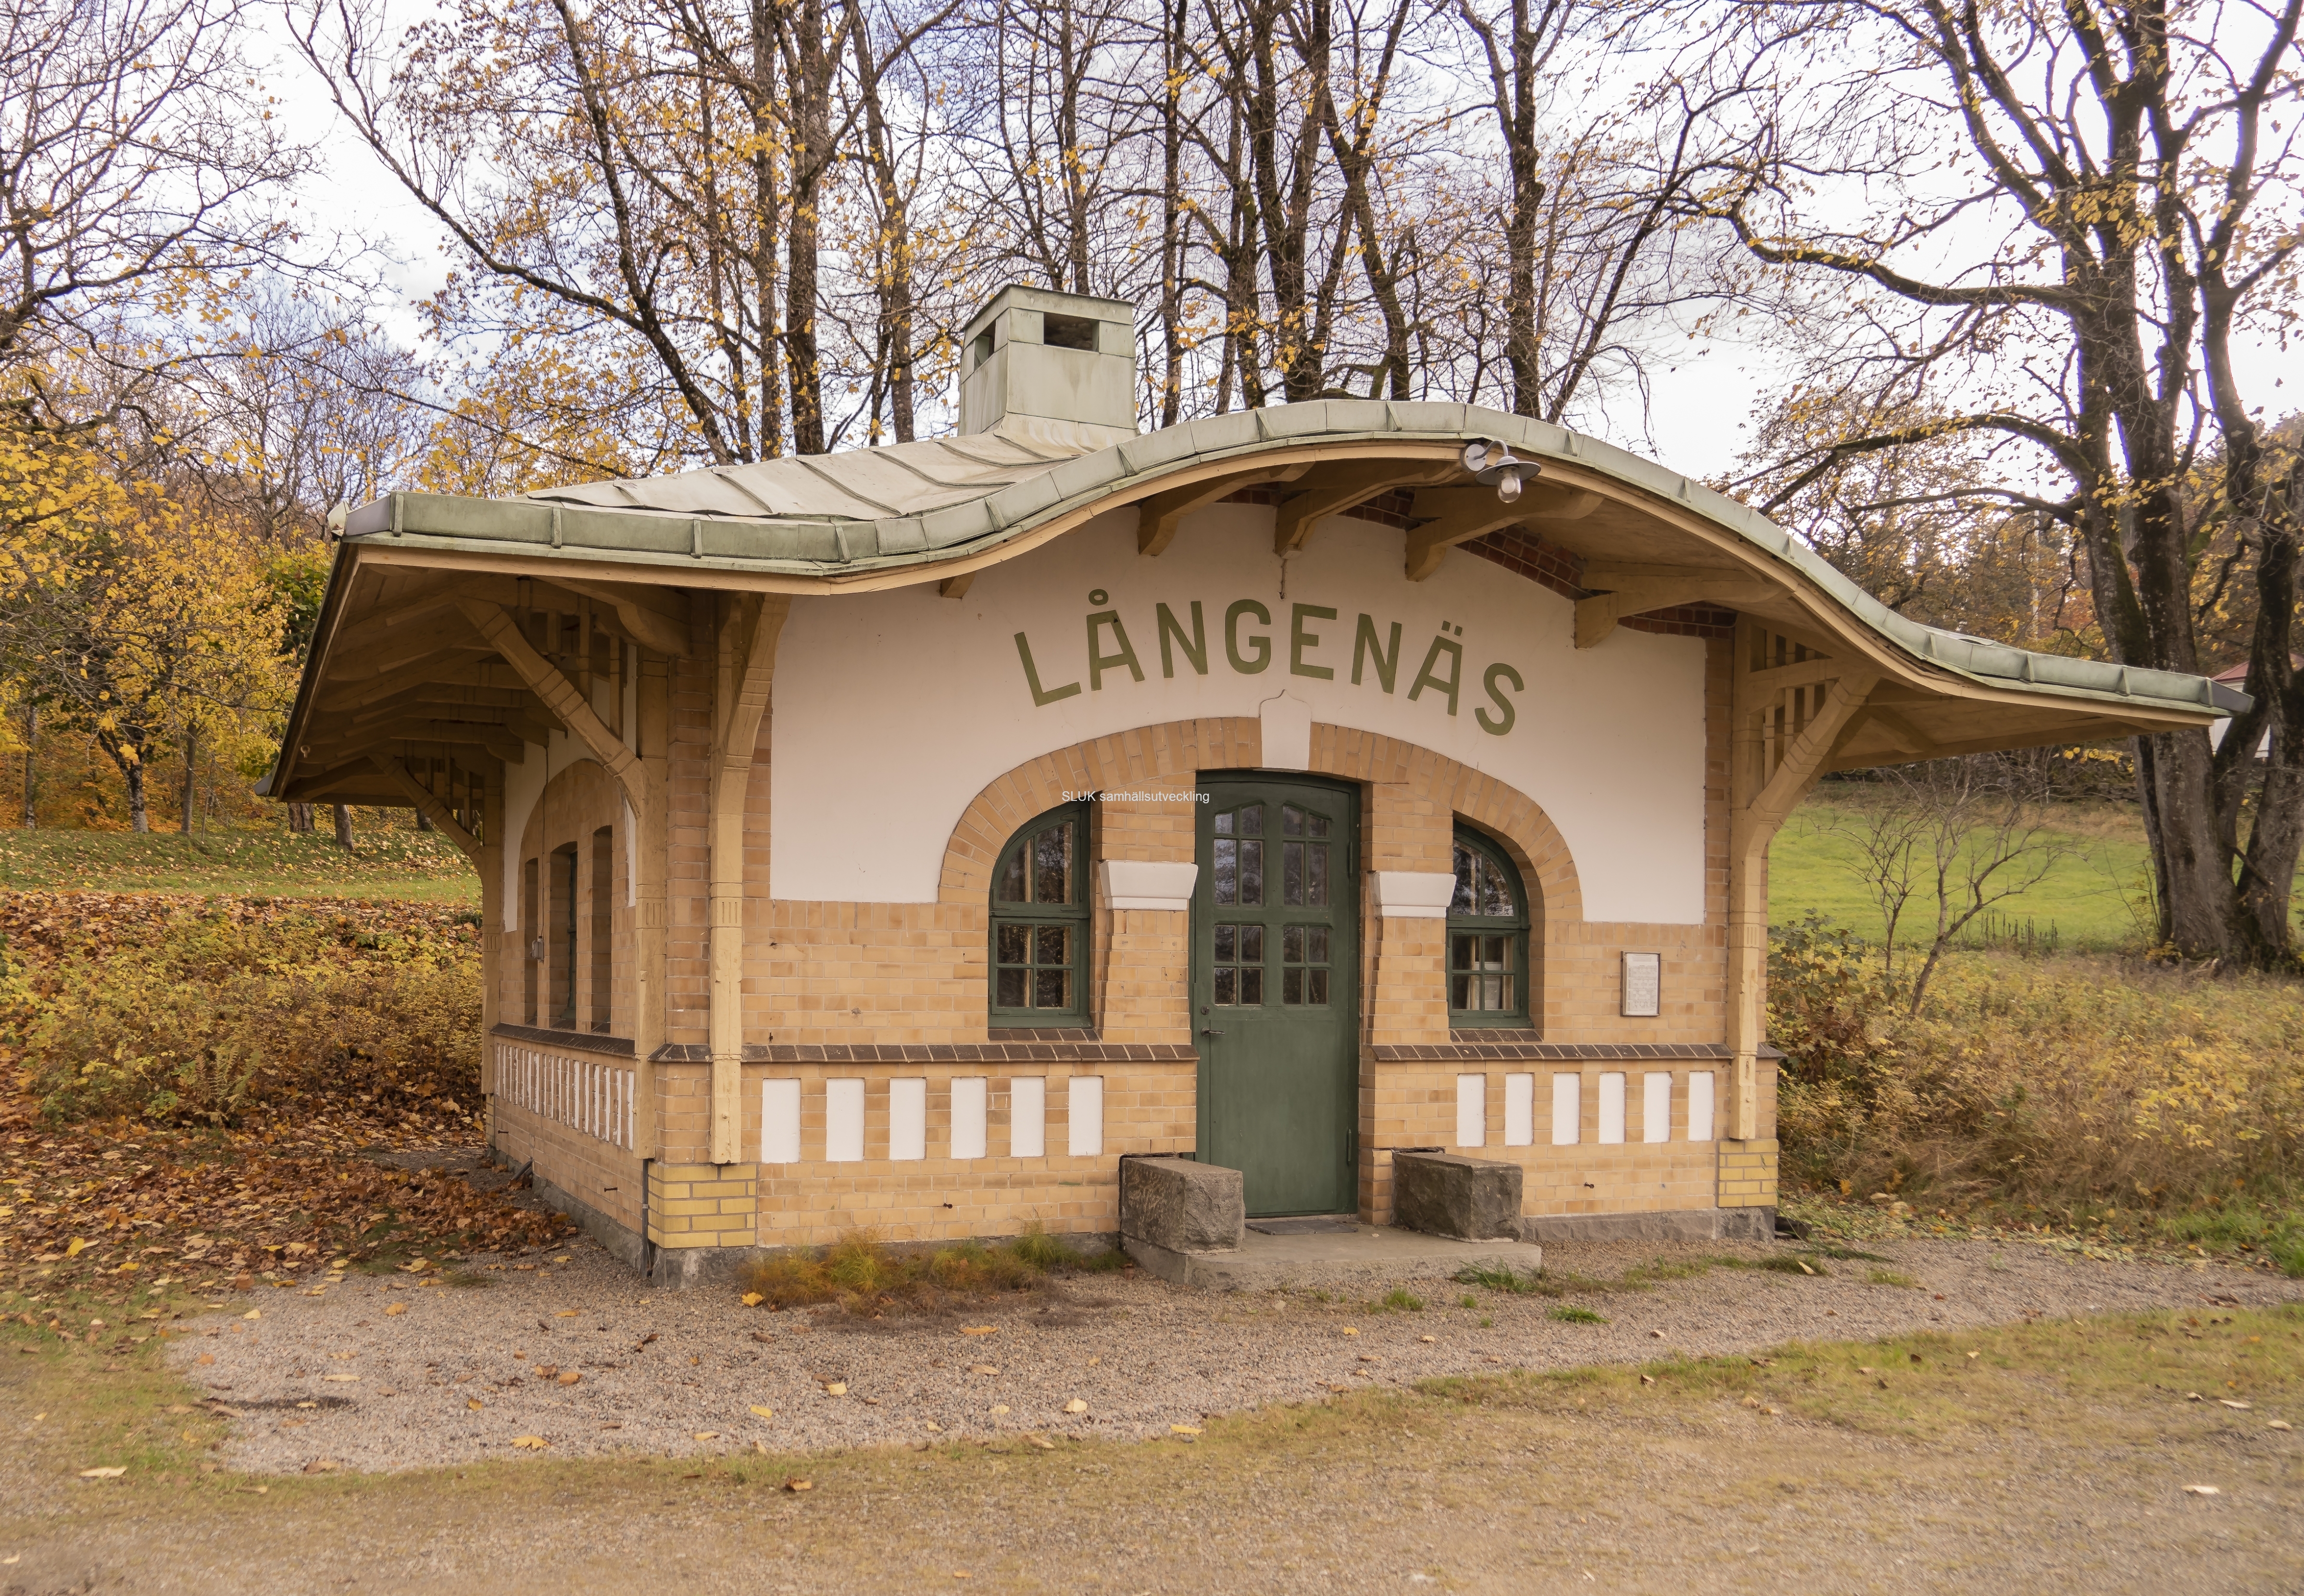 I Långenäs, utmed järnvägen från Mölnlycke mot Borås, finns fortfarande denna vackra vänthall. Den är inte längre i bruk, men används för fritidsaktiviteter av de närboende. Jag kikade in och såg ett pingisbord.